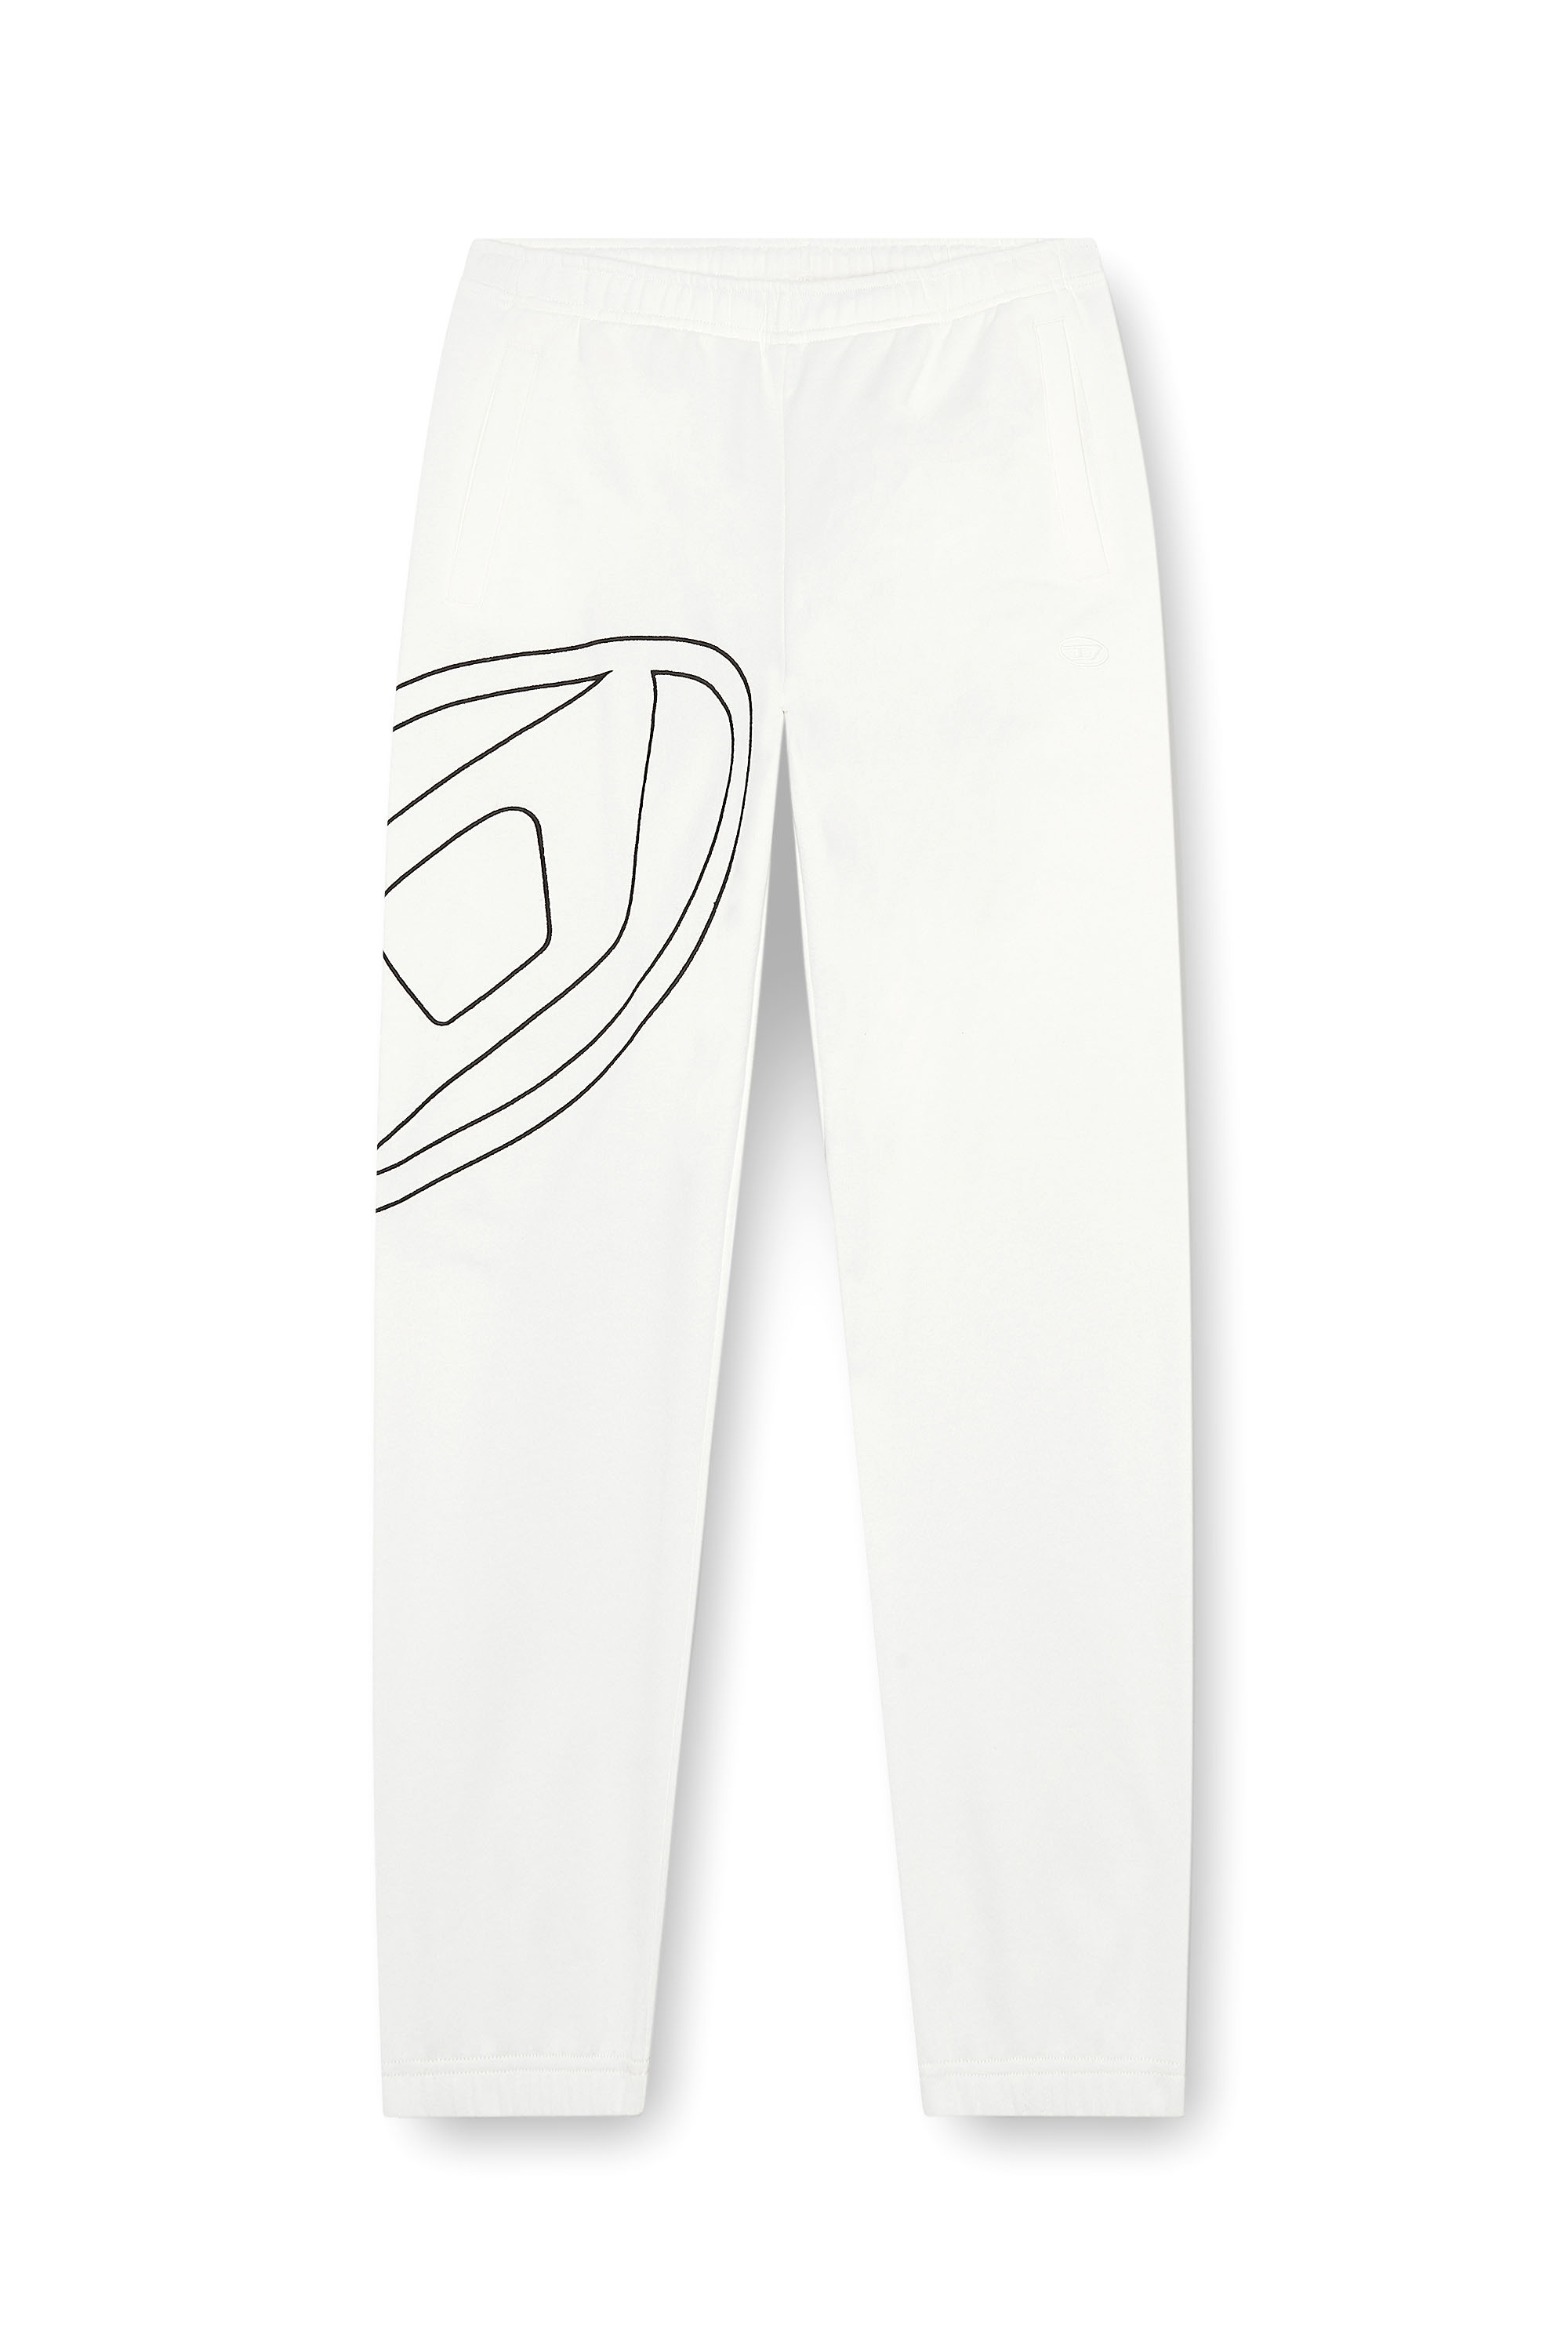 Diesel - P-MARKY-MEGOVAL-D, Homme Pantalon de survêtement avec méga oval D in Blanc - Image 4